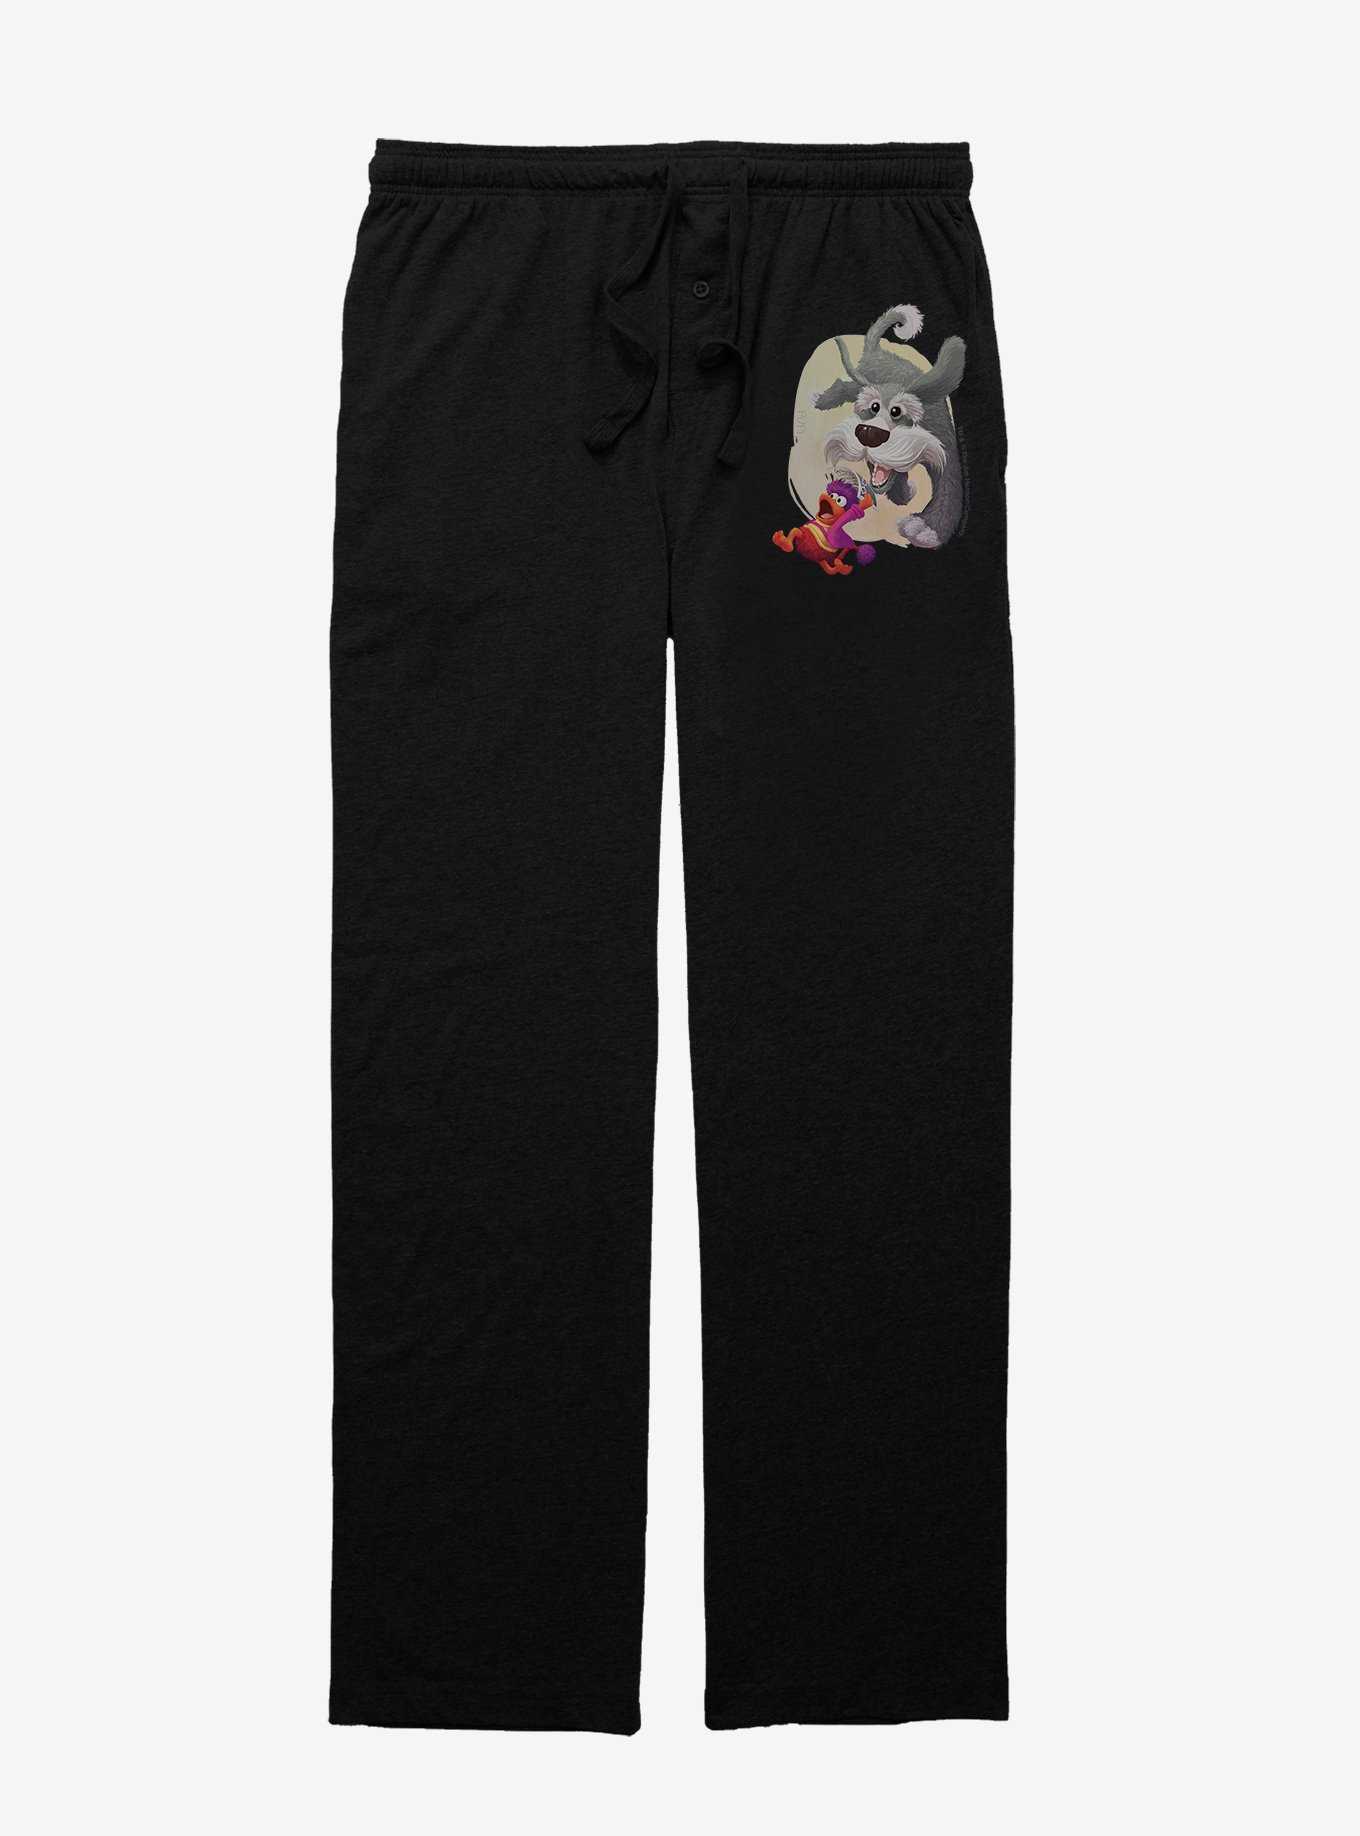 Jim Henson's Fraggle Rock Run Away Pajama Pants, , hi-res